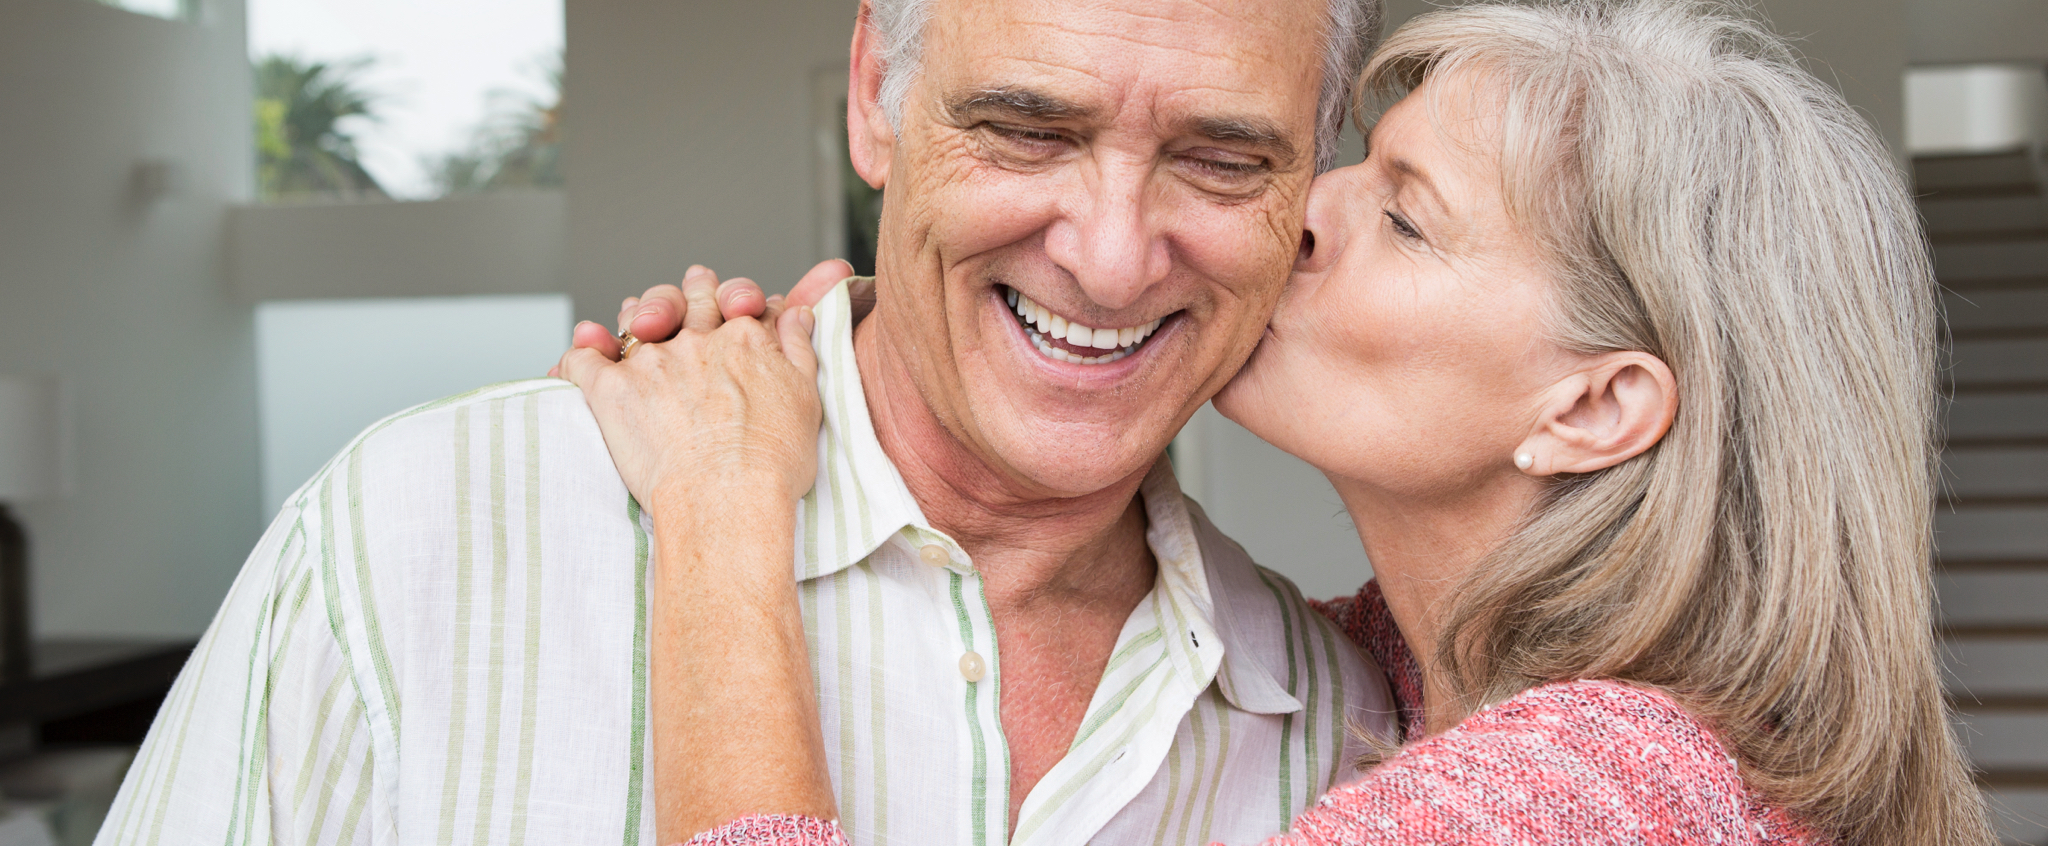 Una mujer mayor abraza y besa en la mejilla a un hombre de edad similar que sonríe ante el gesto